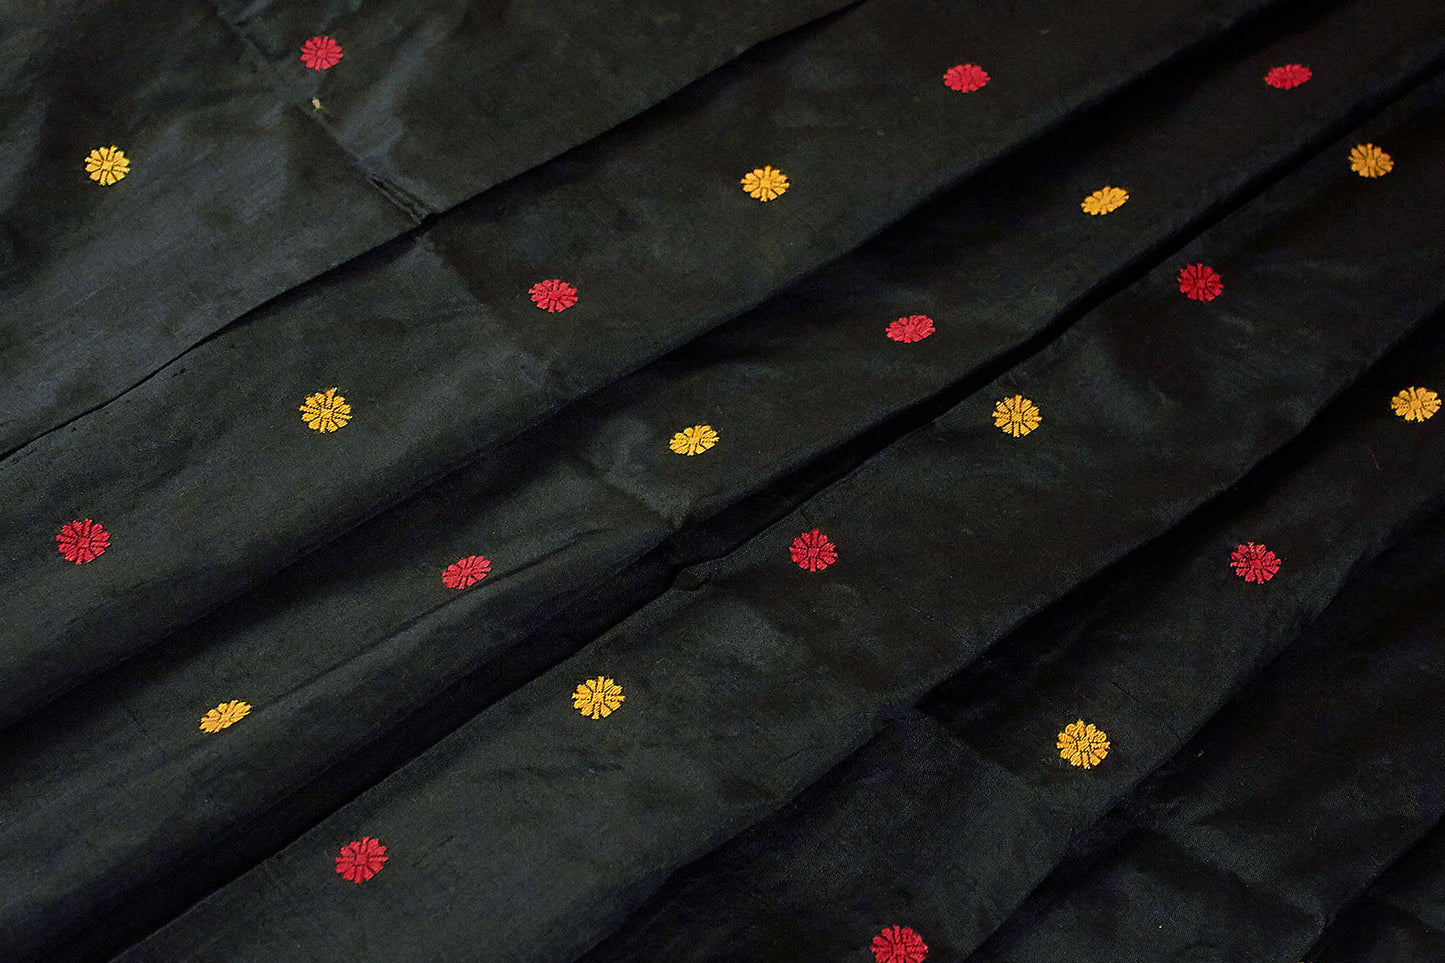 काली प्राकृतिक रंग की हथकरघा सिल्क साड़ी (ऑर्डर पर निर्मित)